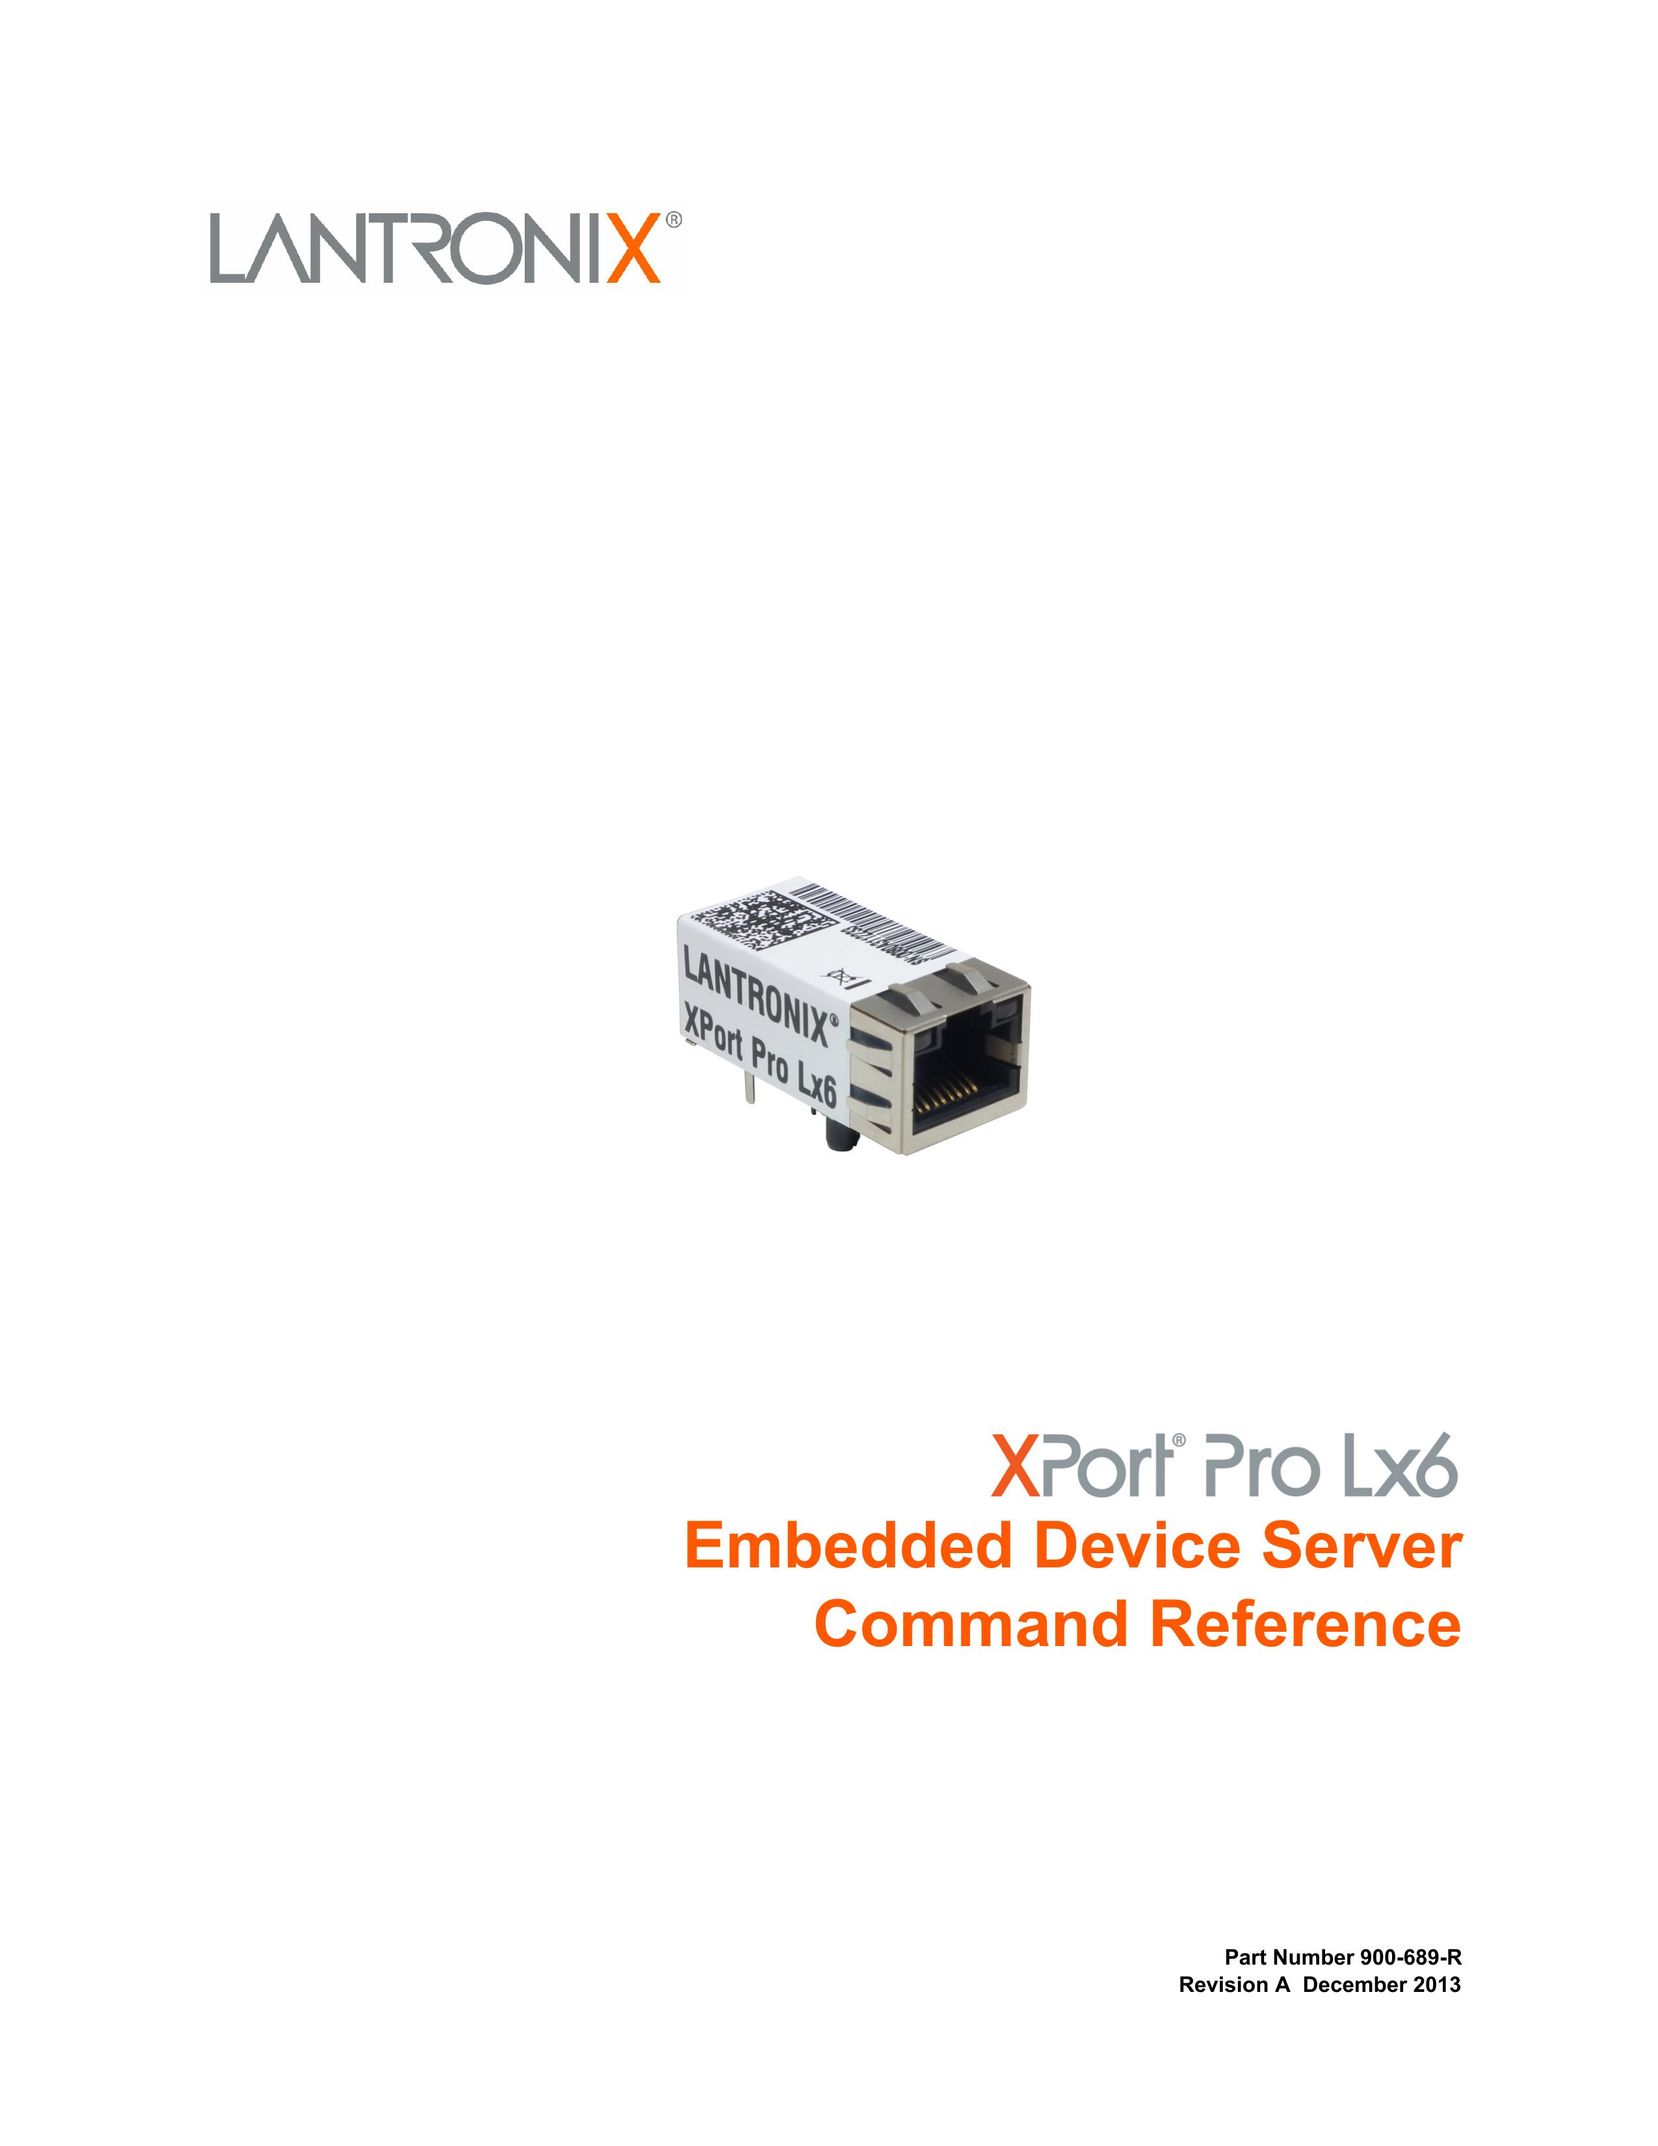 Lantronix LX6 Computer Hardware User Manual